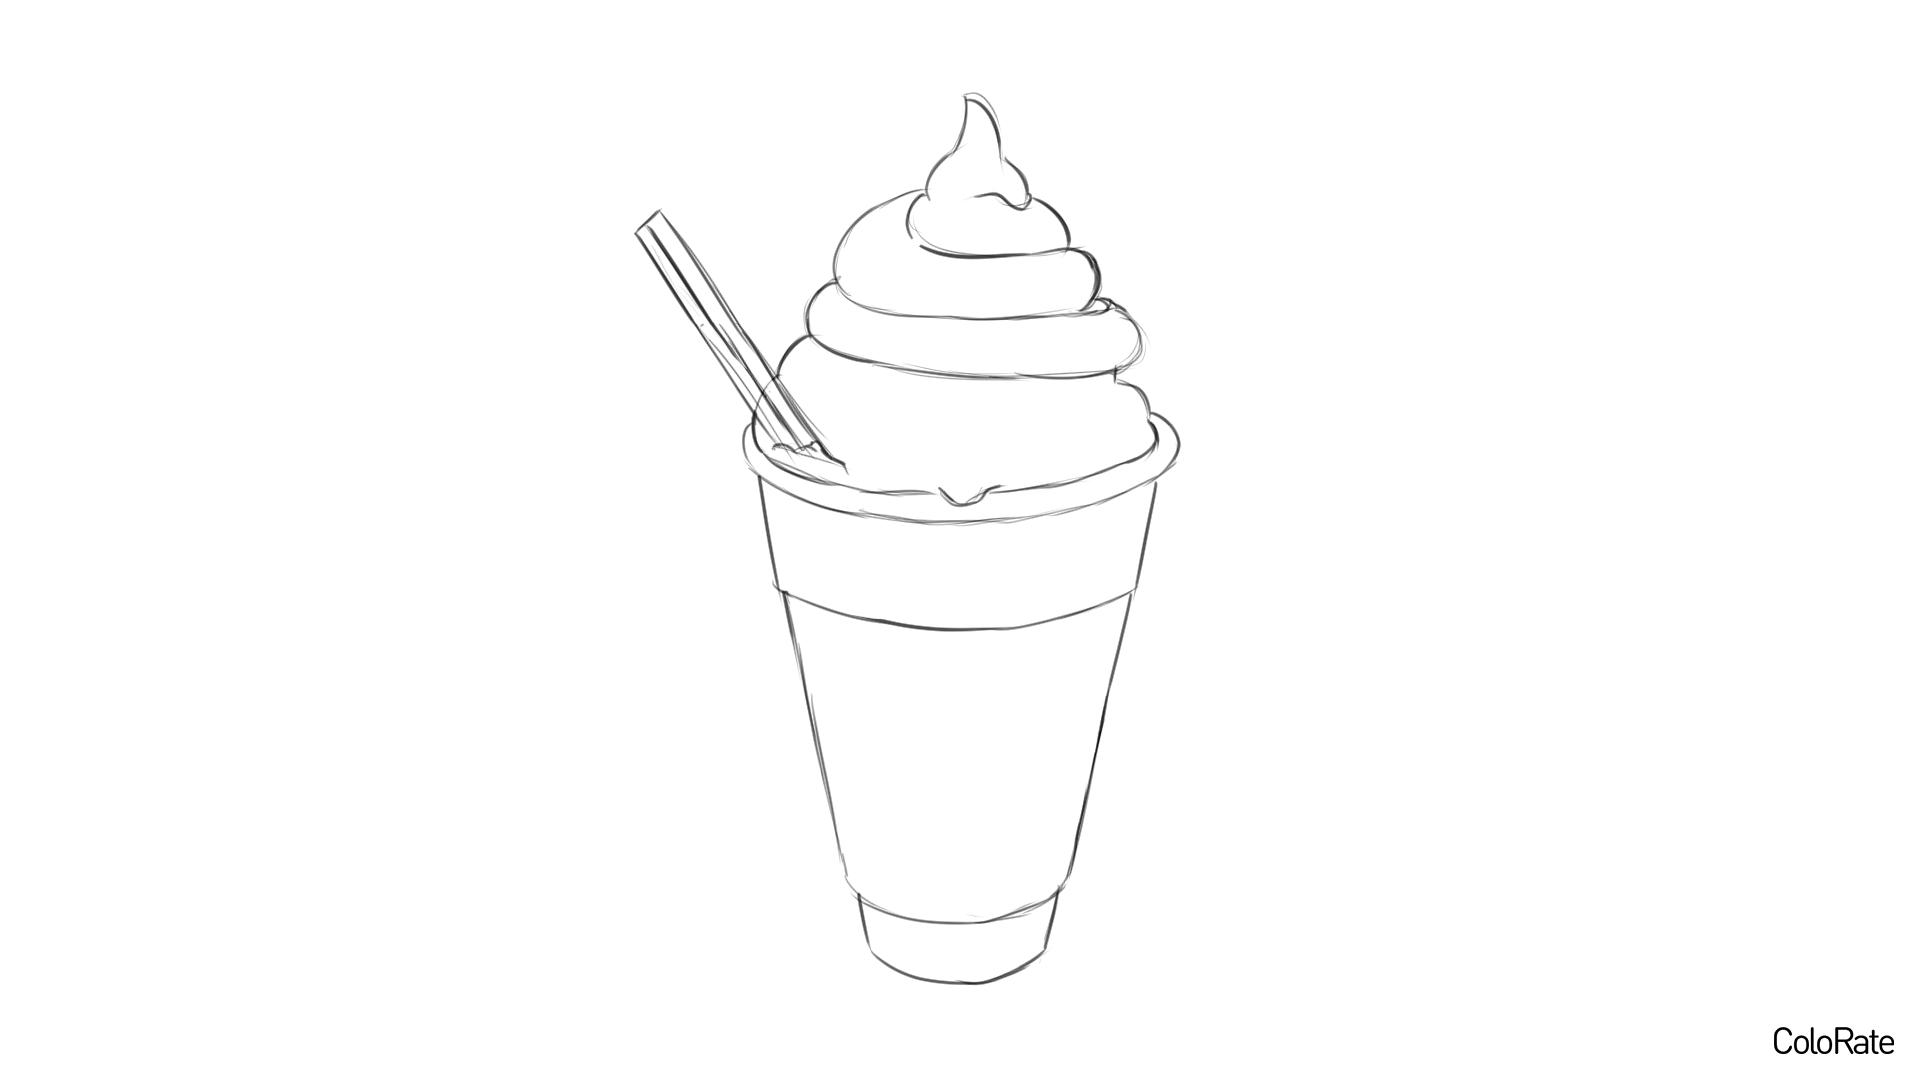 Карандашный рисунок мороженого - шаг 5 - удаляем вспомогательные линии